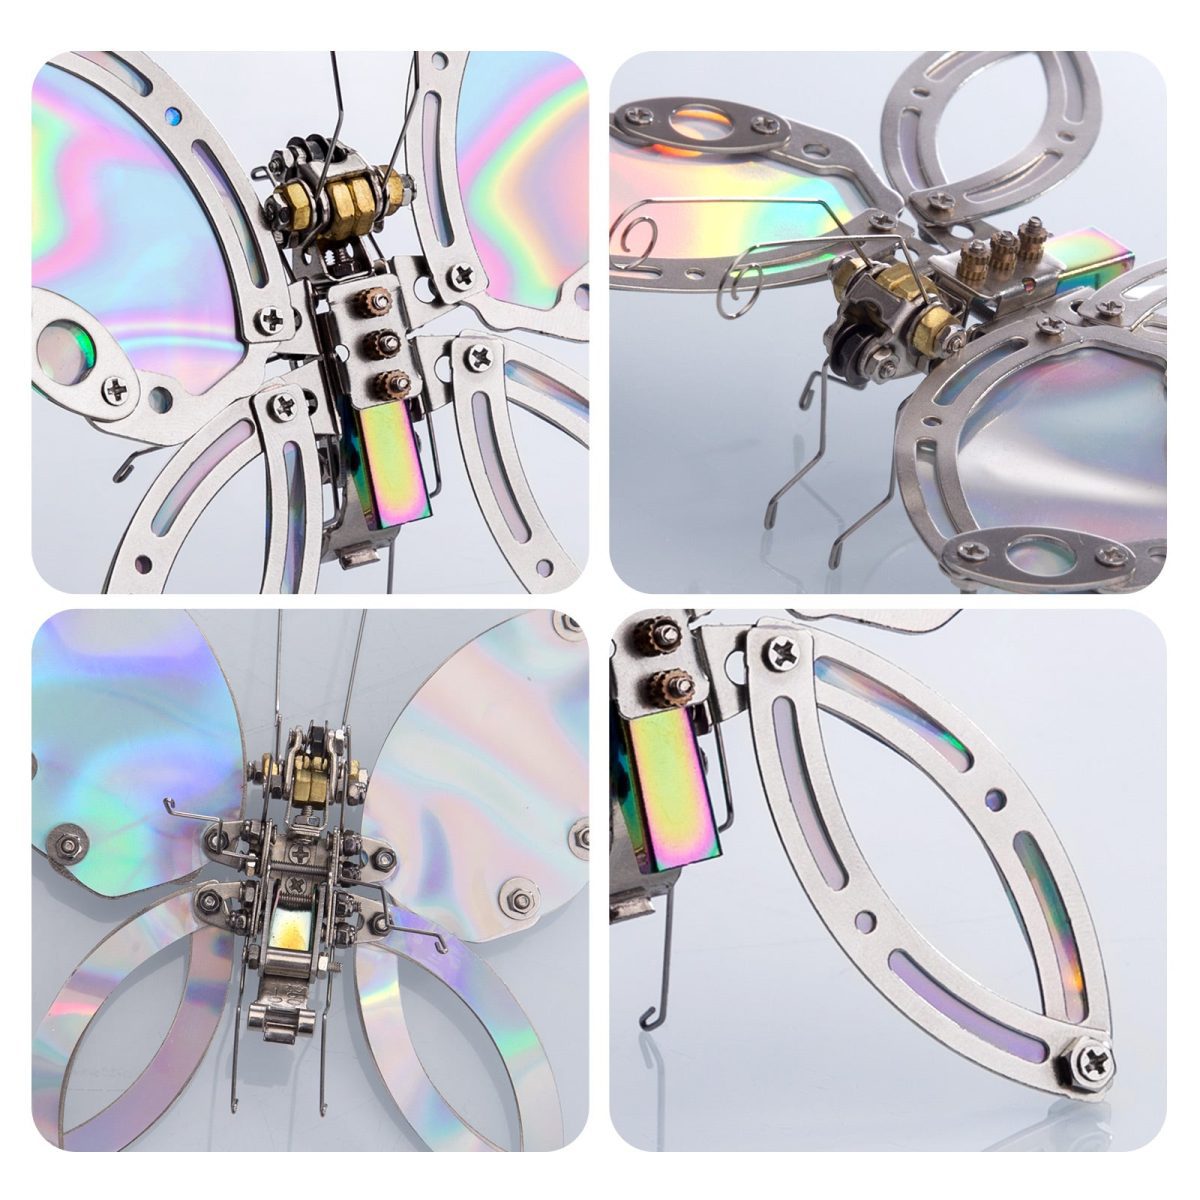 95-Piece 3D Chaos Butterfly Effect Steampunk Model Kit